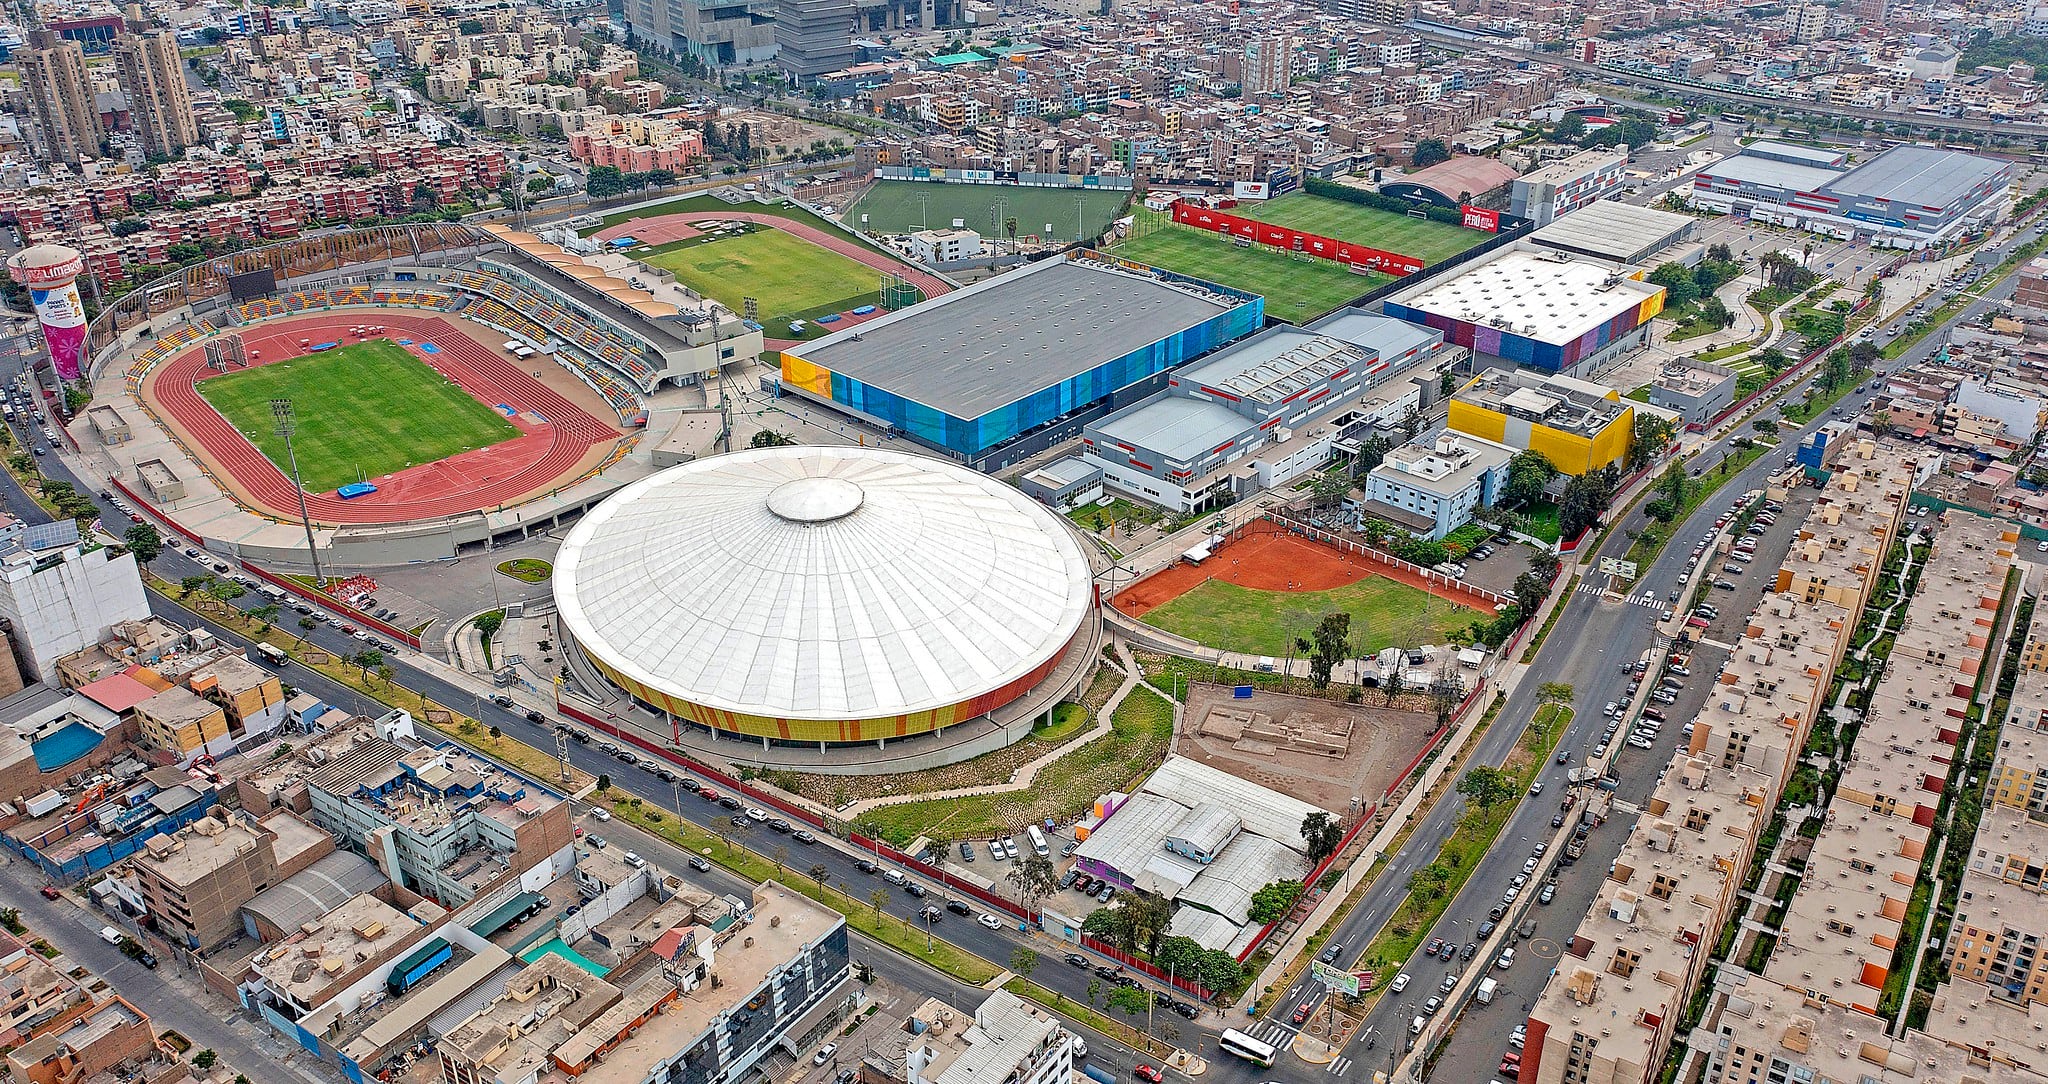 Conoce los recintos deportivos construidos para los Juegos Panamericanos Lima 2019 y administrados por el Proyecto Especial Legado, los cuales estarían listos para albergar los próximos Juegos Panamericanos 2027. (Foto: Legado)